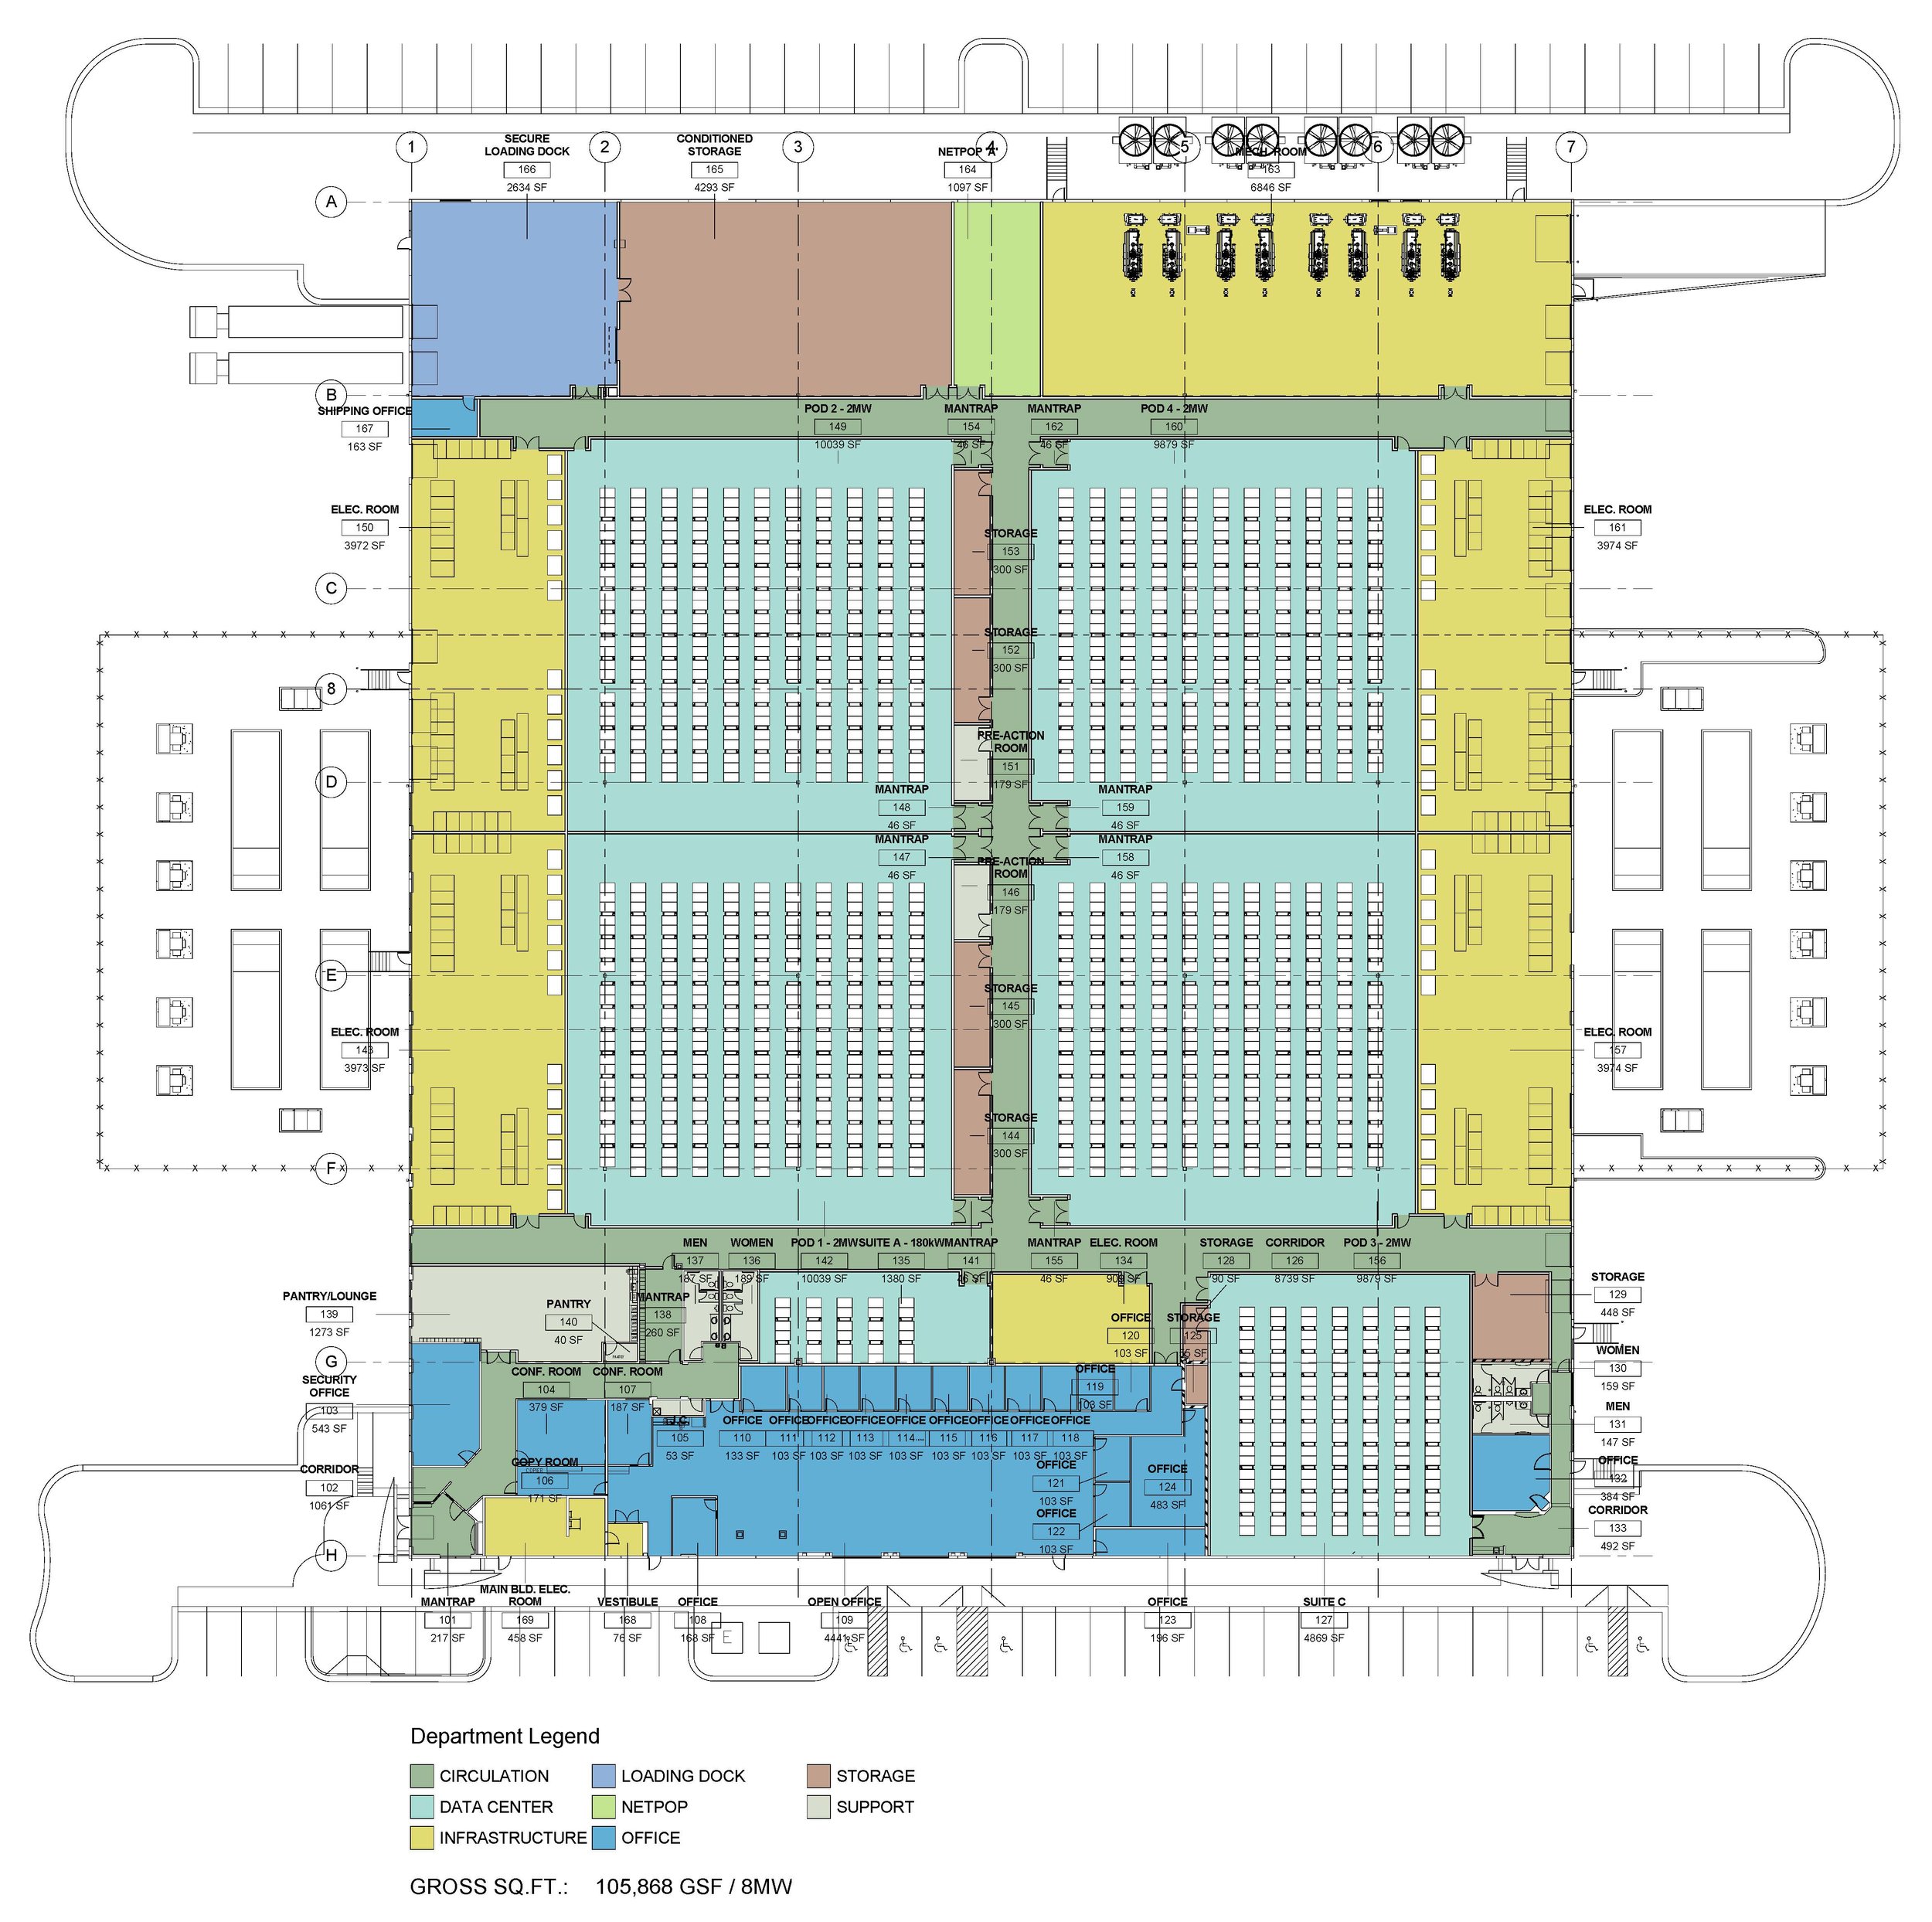 8MW Data Center 01.01 - Floor Plan.jpg